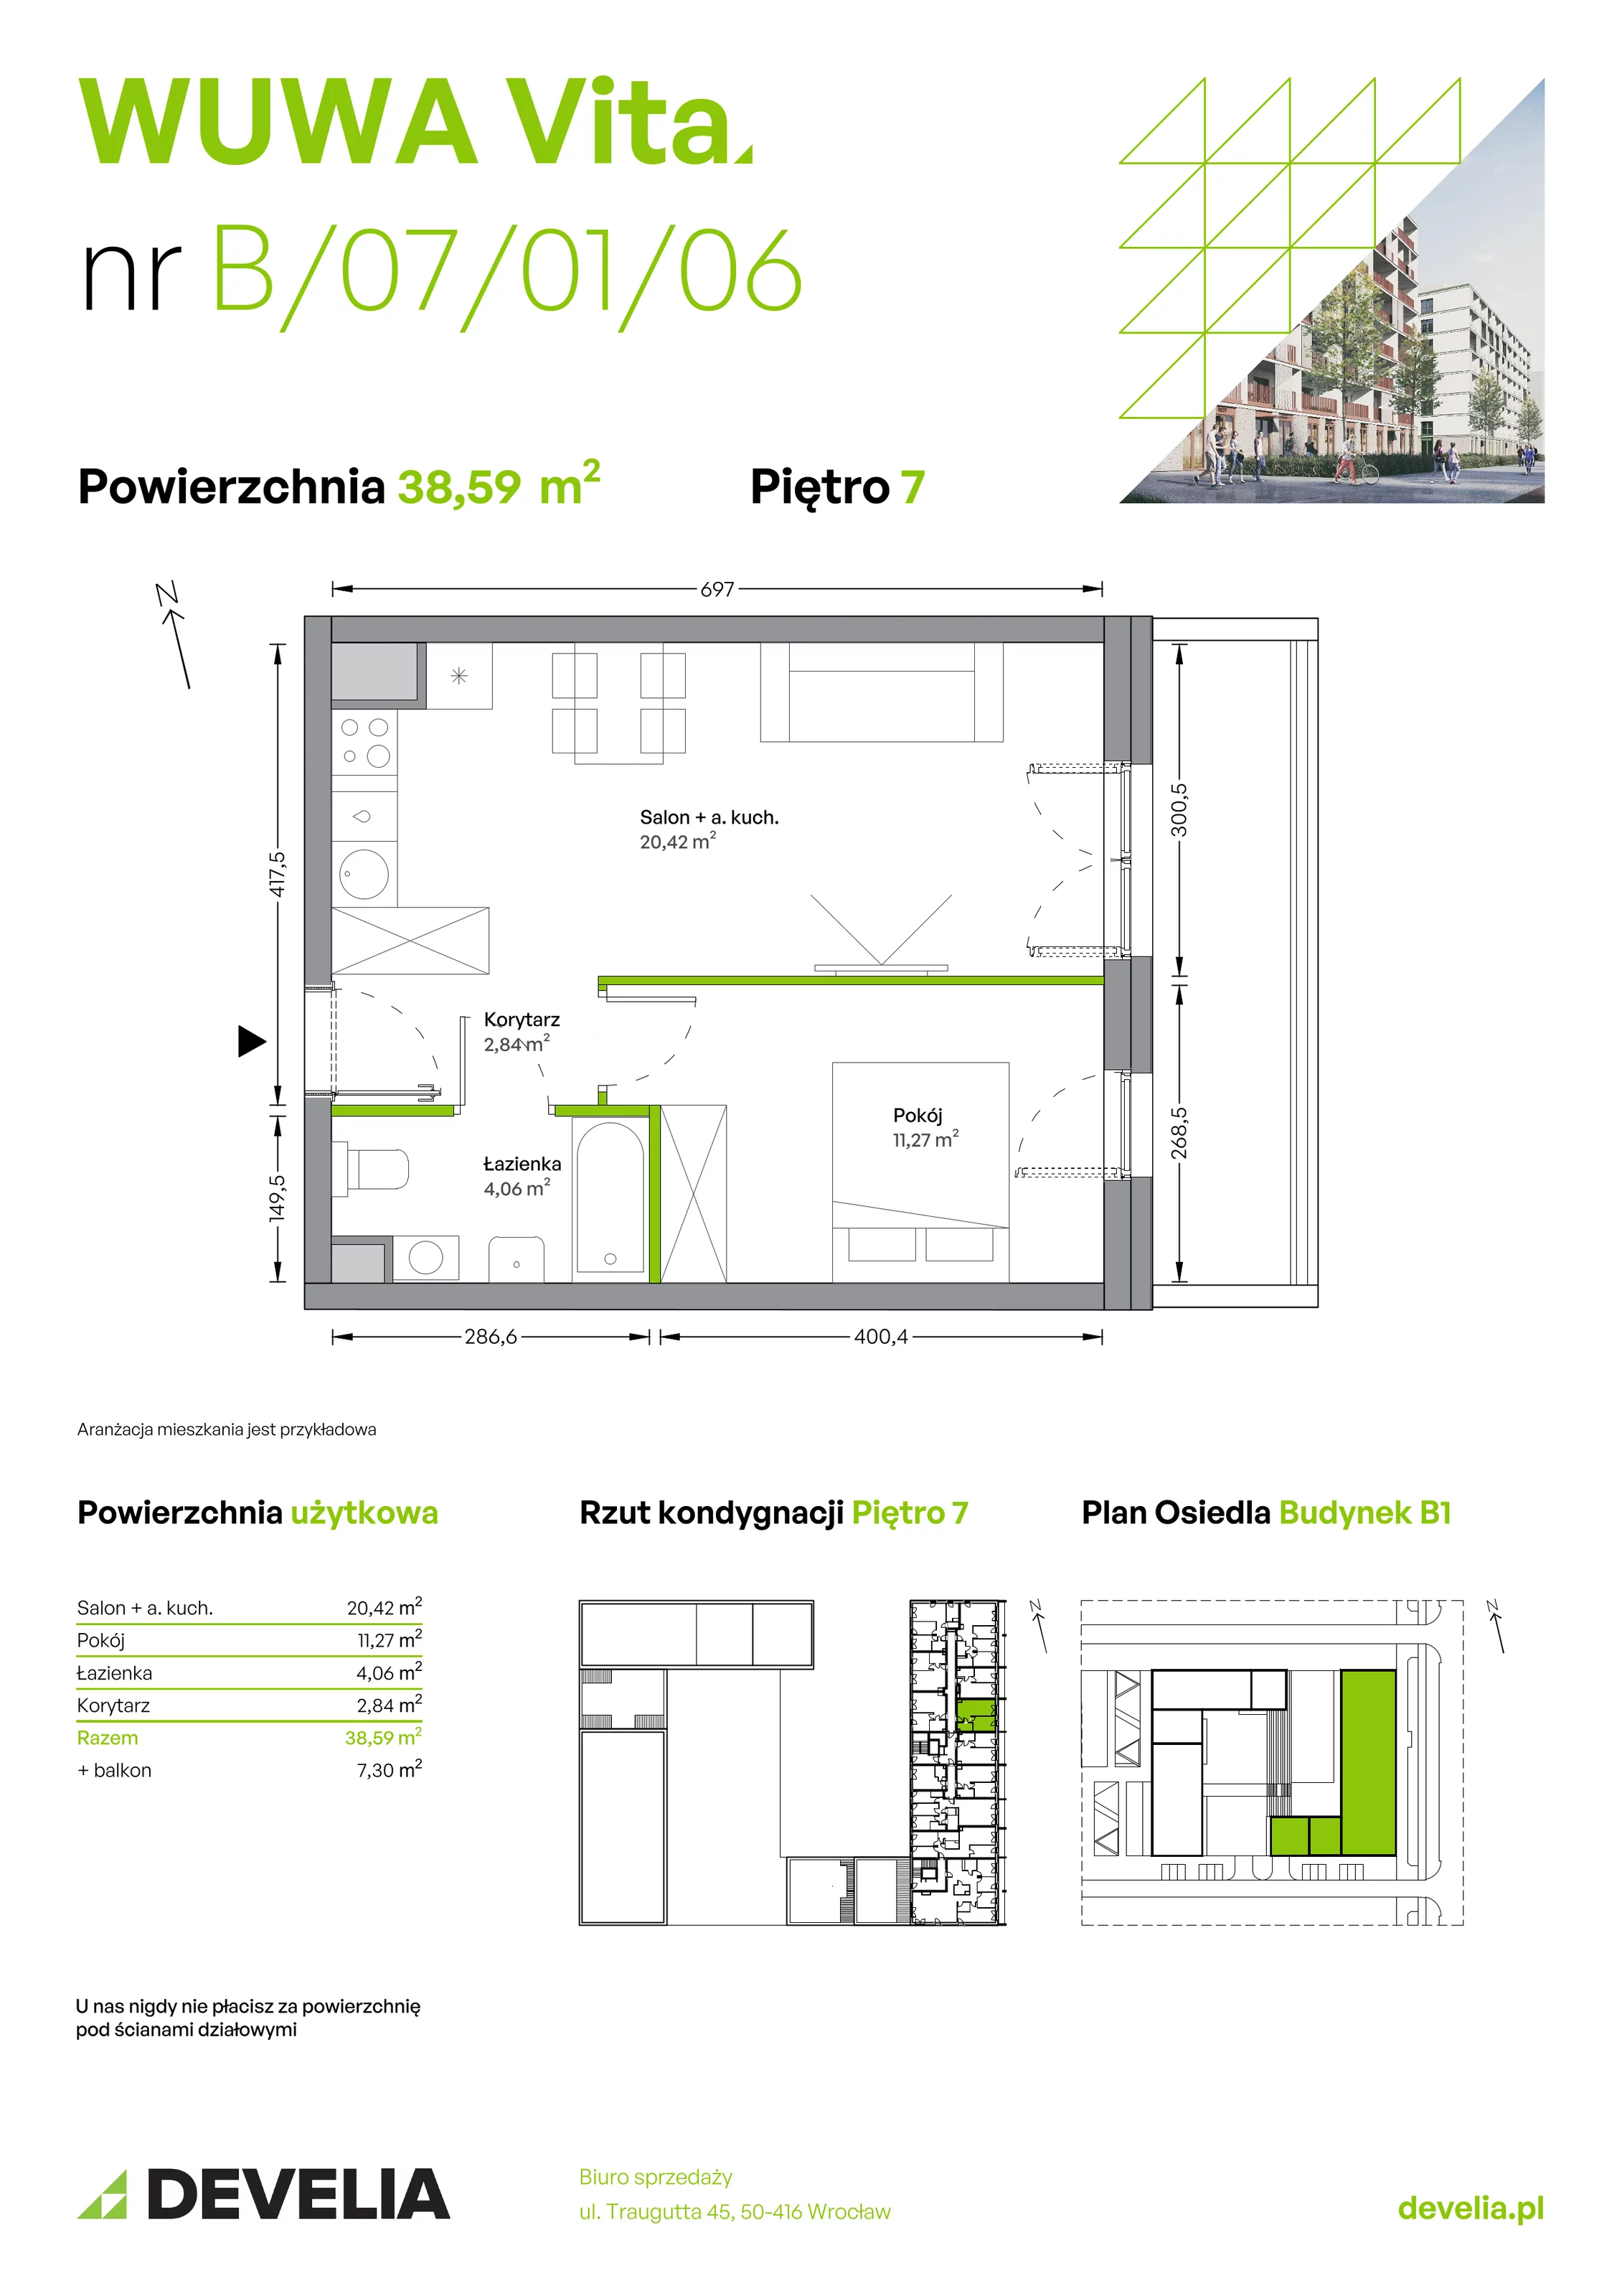 Mieszkanie 38,59 m², piętro 7, oferta nr B.07.01.06, WUWA Vita, Wrocław, Żerniki, Fabryczna, ul. Tadeusza Brzozy